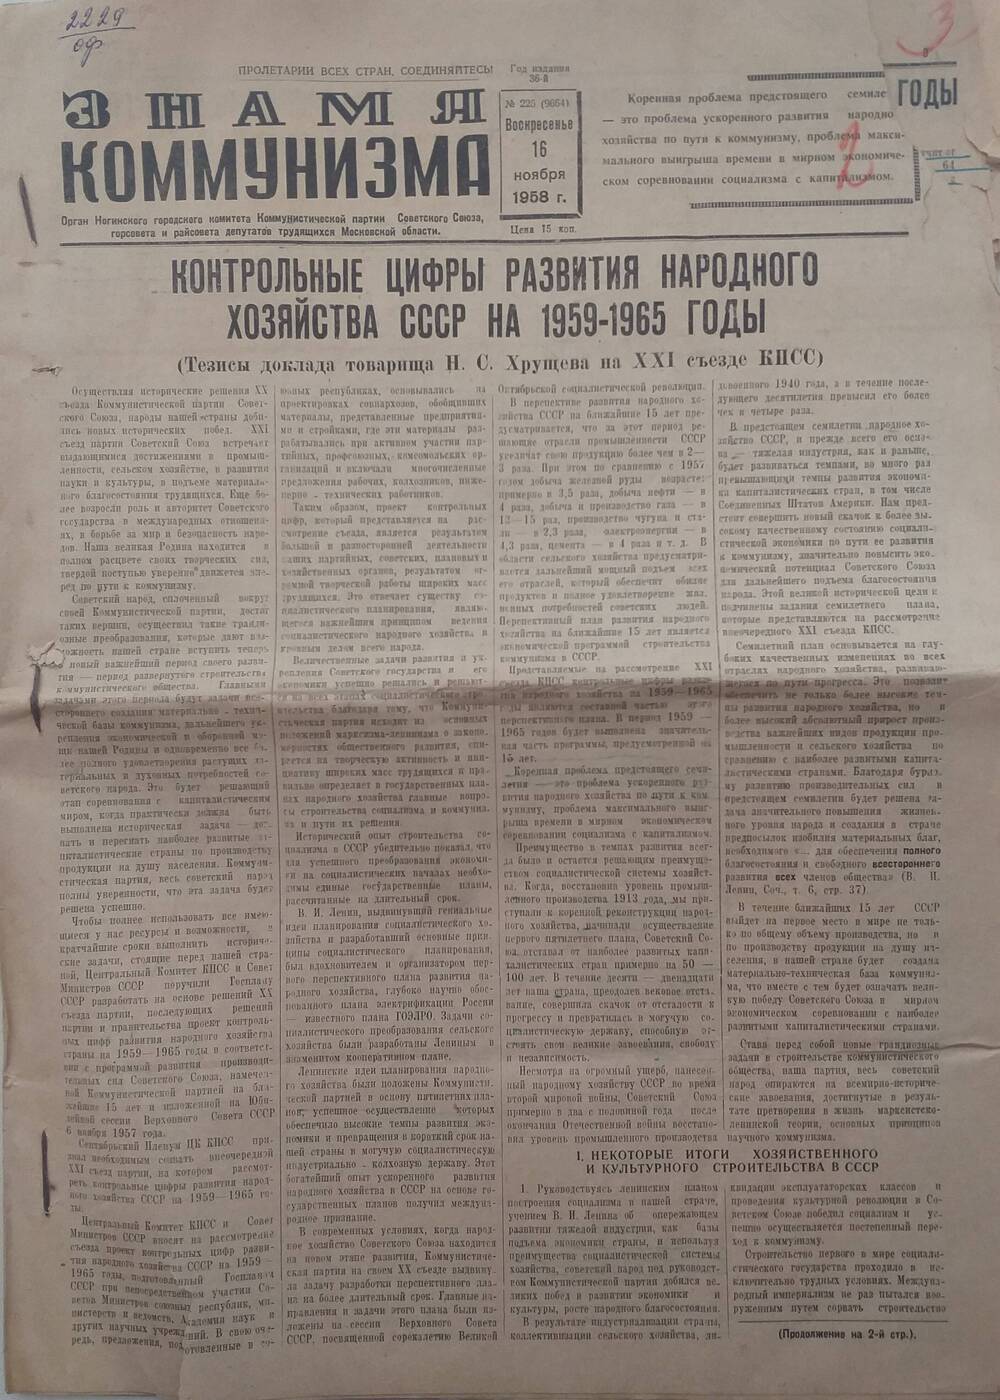 Газета Знамя коммунизма № 225, орган Ногинского городского комитета КПСС, горсовета и райсовета депутатов трудящихся, от 16 ноября 1958 года.